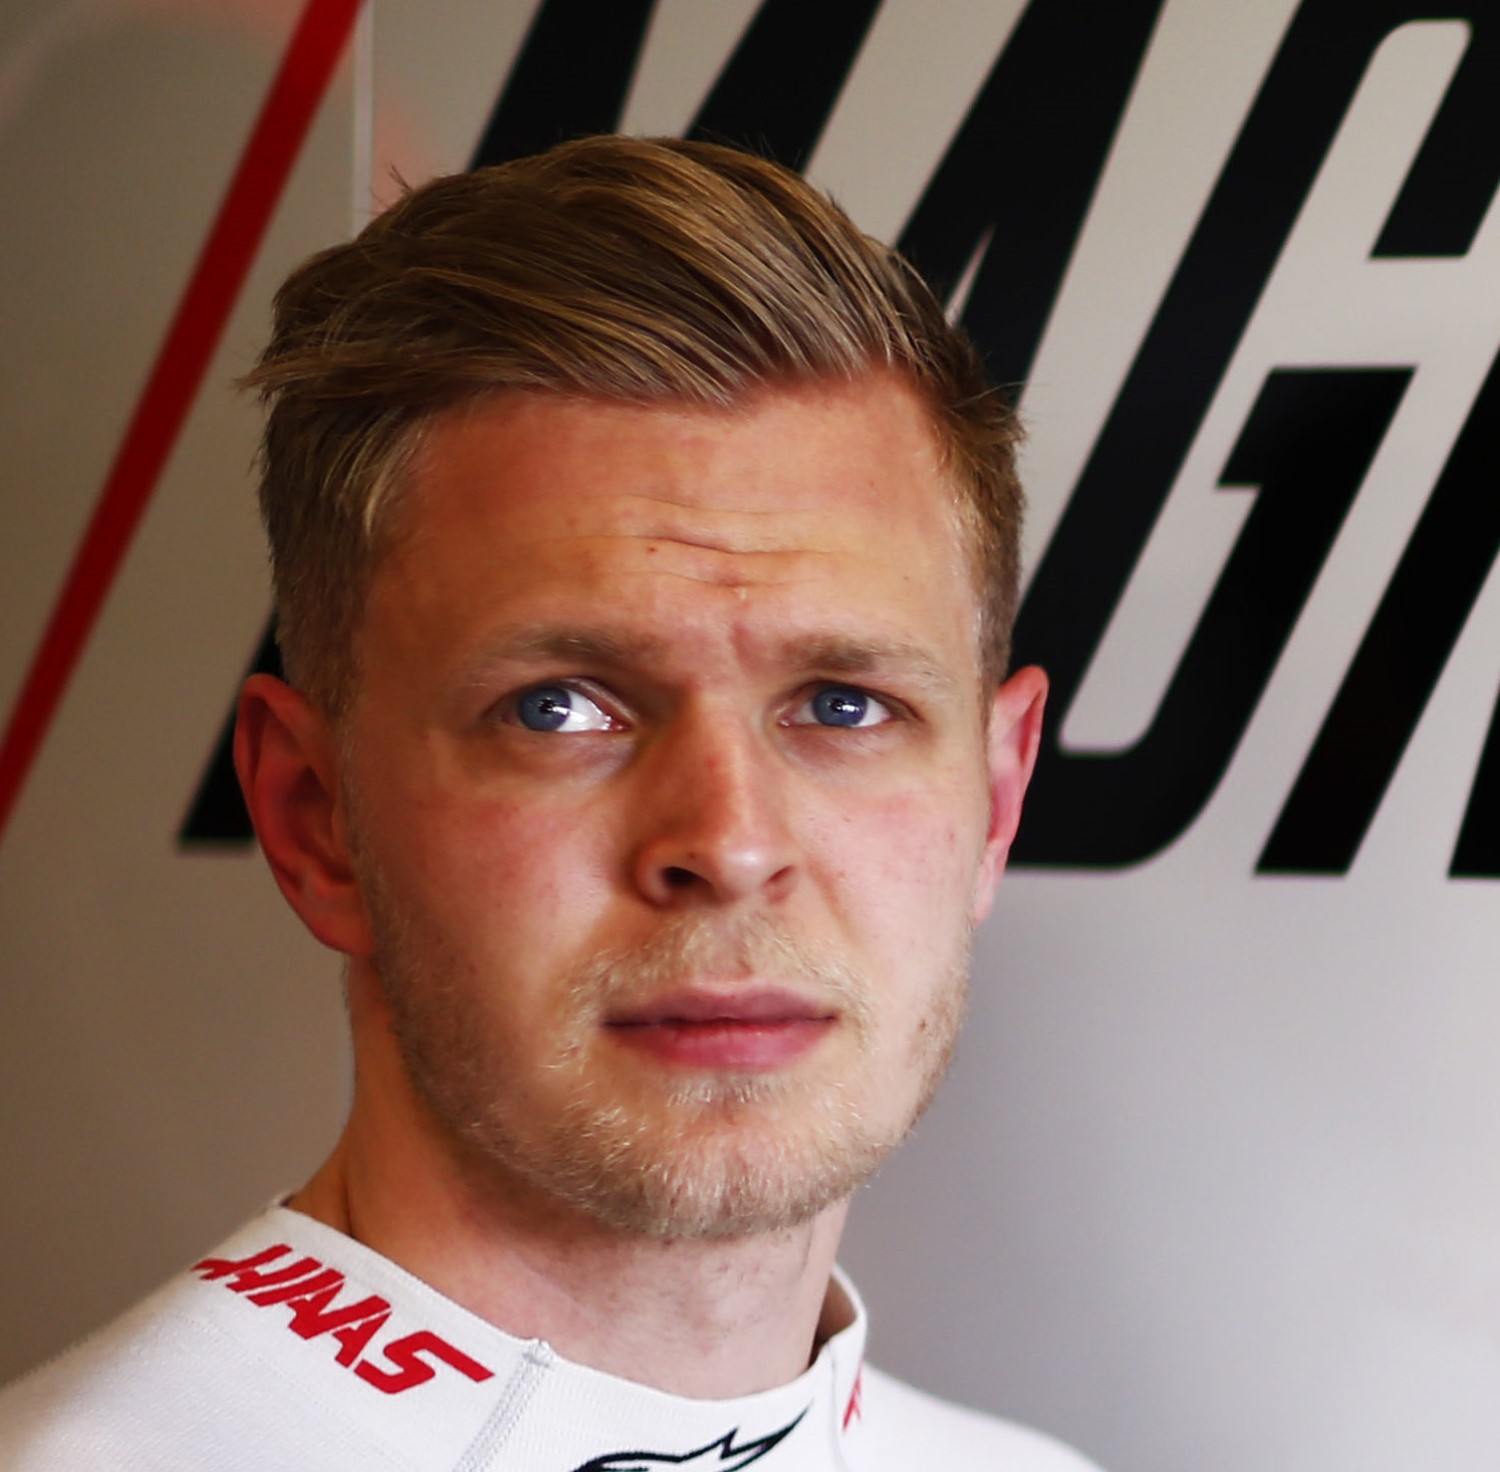 Magnussen ruined Ericsson's race